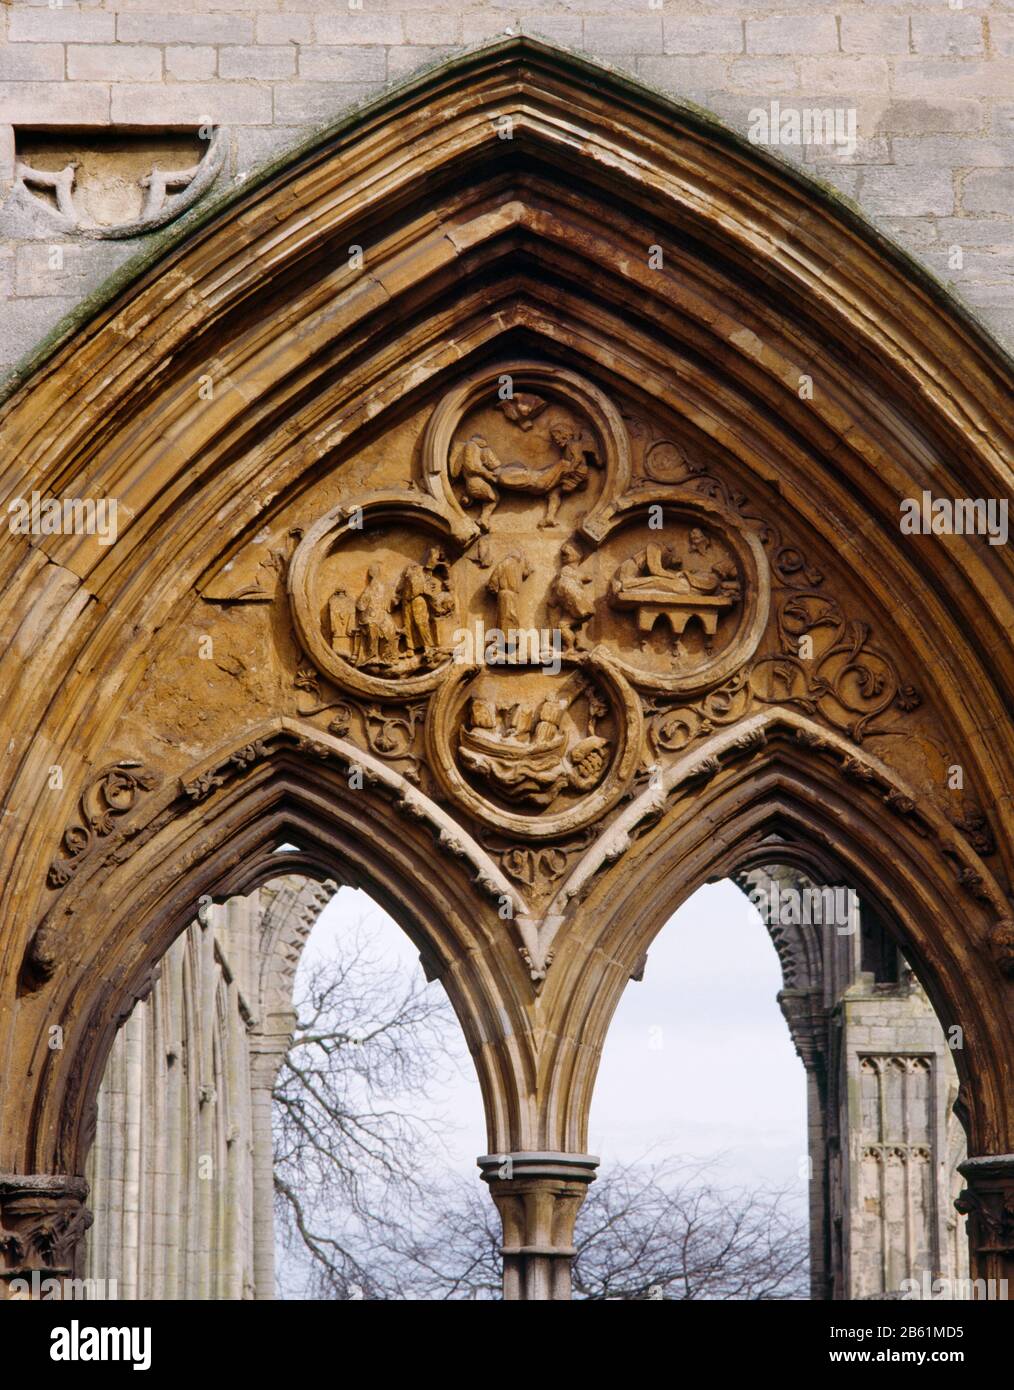 Scènes endommagées de la vie de St Guthlac (d. 714) sur le front W de la nef ruinée de l'abbaye de Croyland, Crowland, Lincolnshire, Angleterre, Royaume-Uni. Banque D'Images